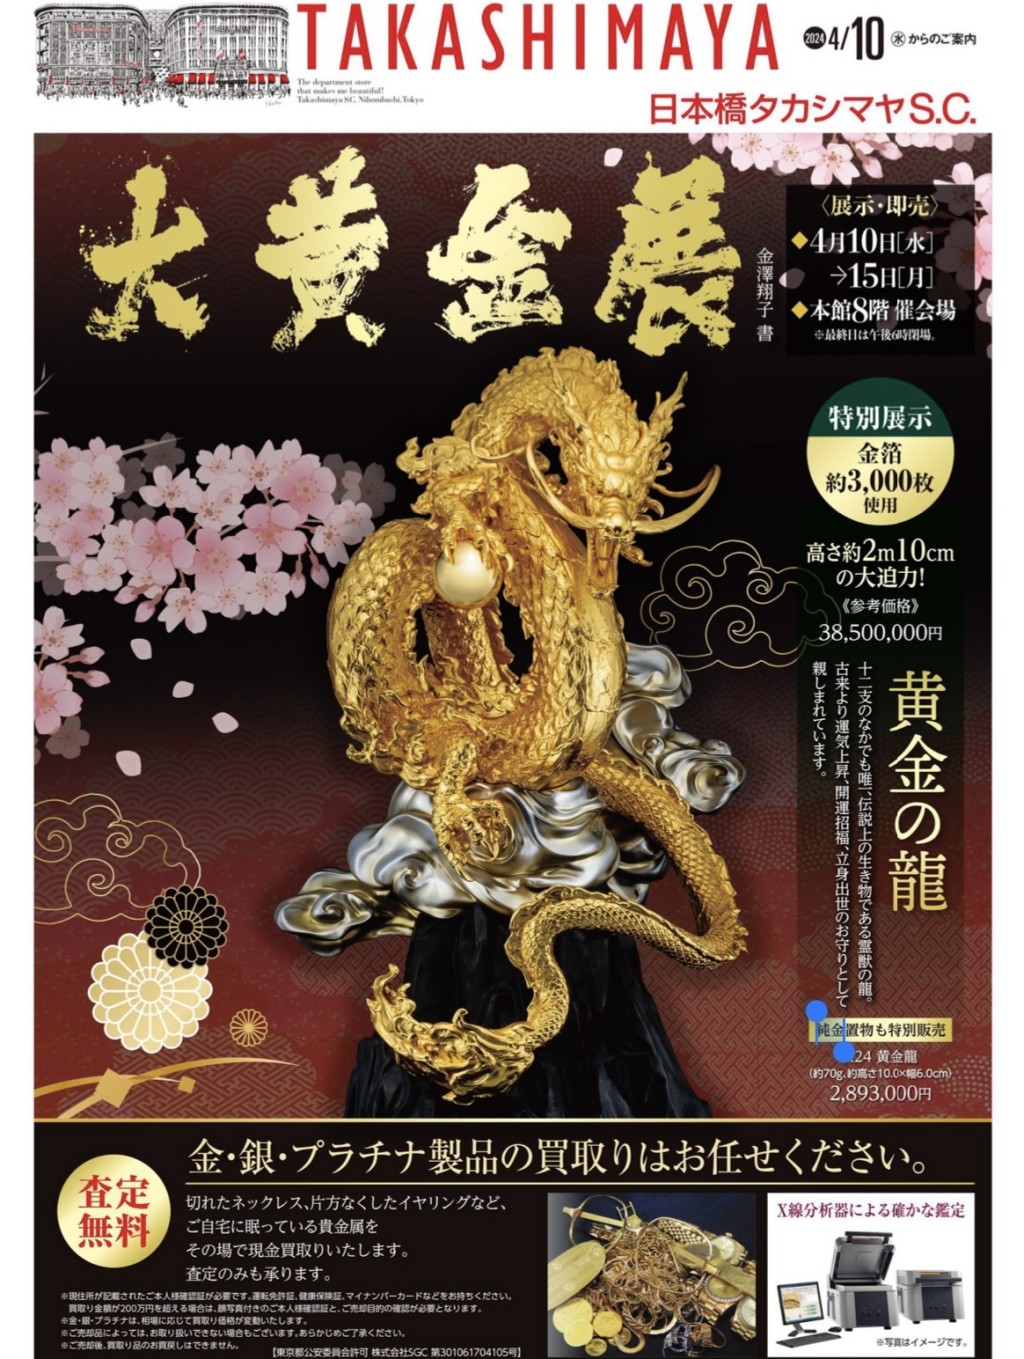 日本桥高岛屋「大黄金展」宣传刊物。 